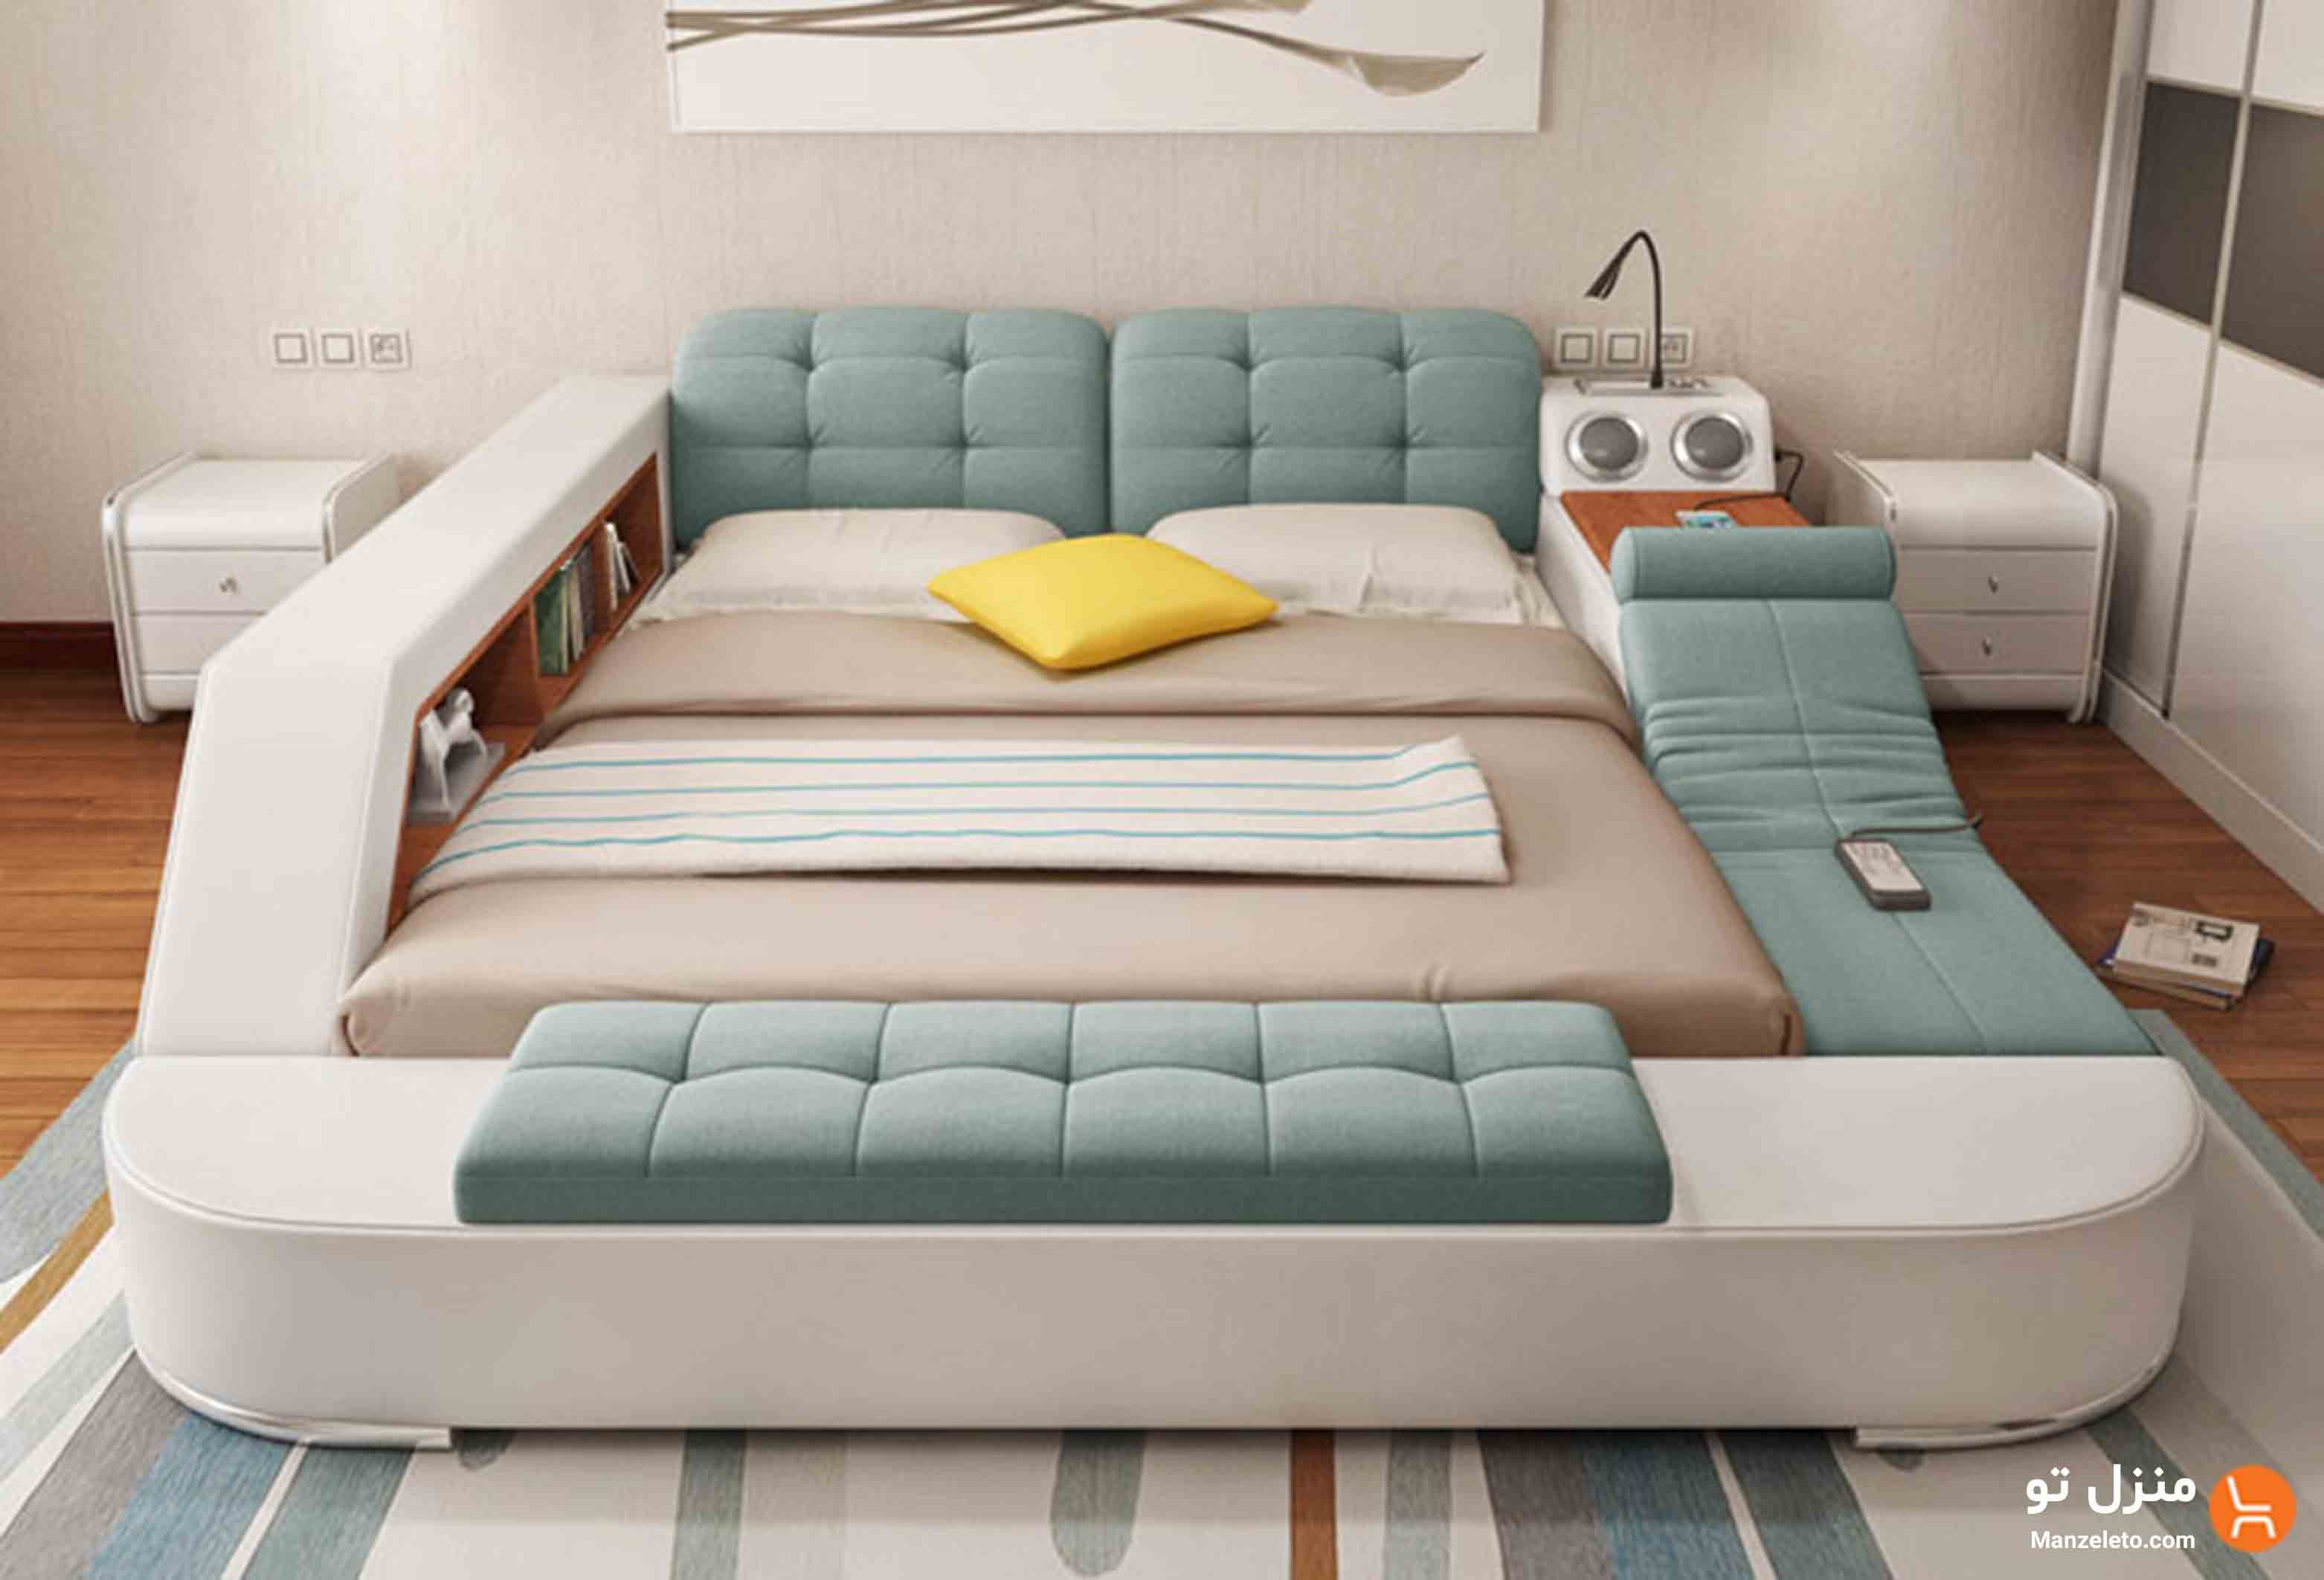 Красивая диван кровать. Многофункциональная кровать Ultimate camas. Многофункциональная кровать Smart Bed азиатская. Кровать многофункциональная Кинг сайз. Кровать татами Аскона.